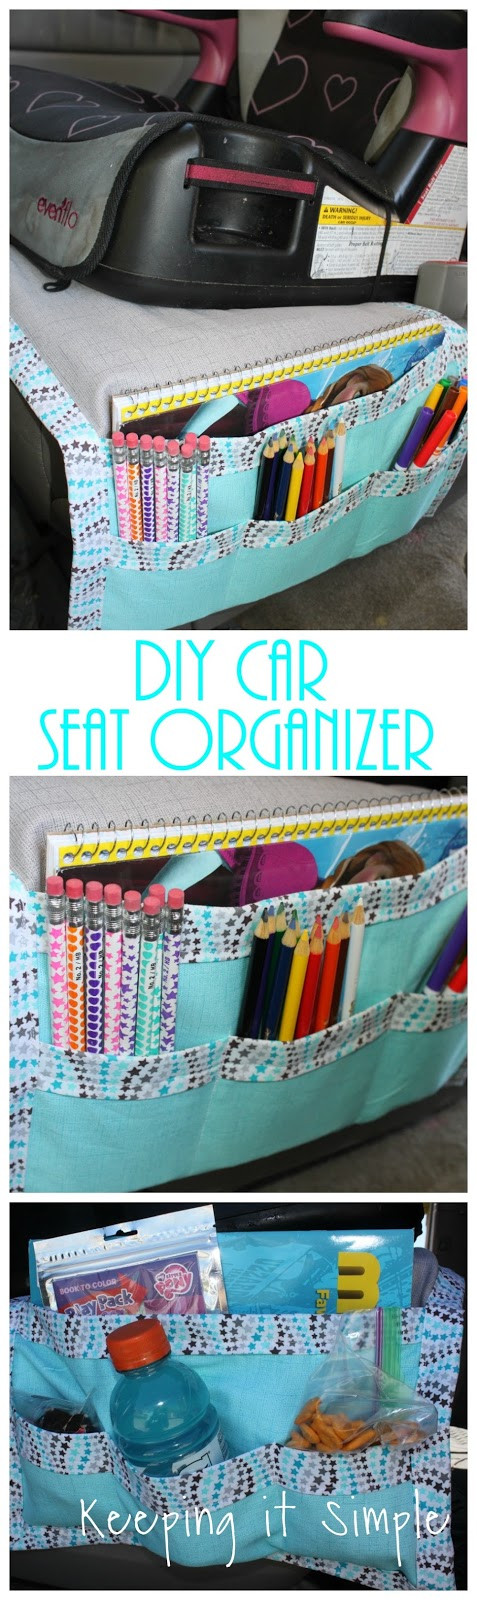 DIY Car Organizers
 DIY Car Seat Organizer for Kids Snacks and Coloring